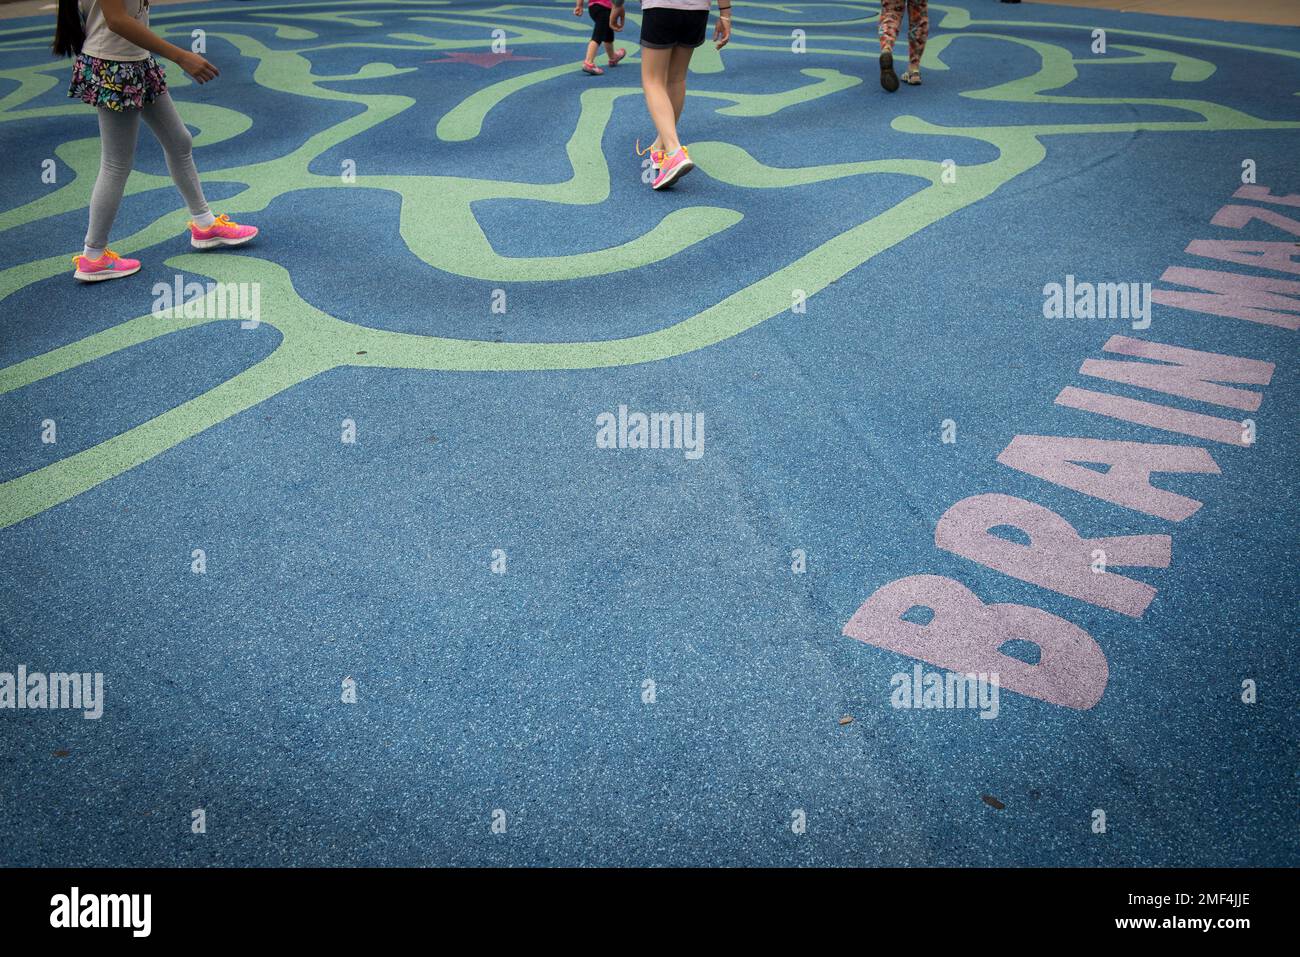 Kinder, die auf einem hirnförmigen Labyrinth laufen, das auf dem Boden  gemalt wurde Stockfotografie - Alamy